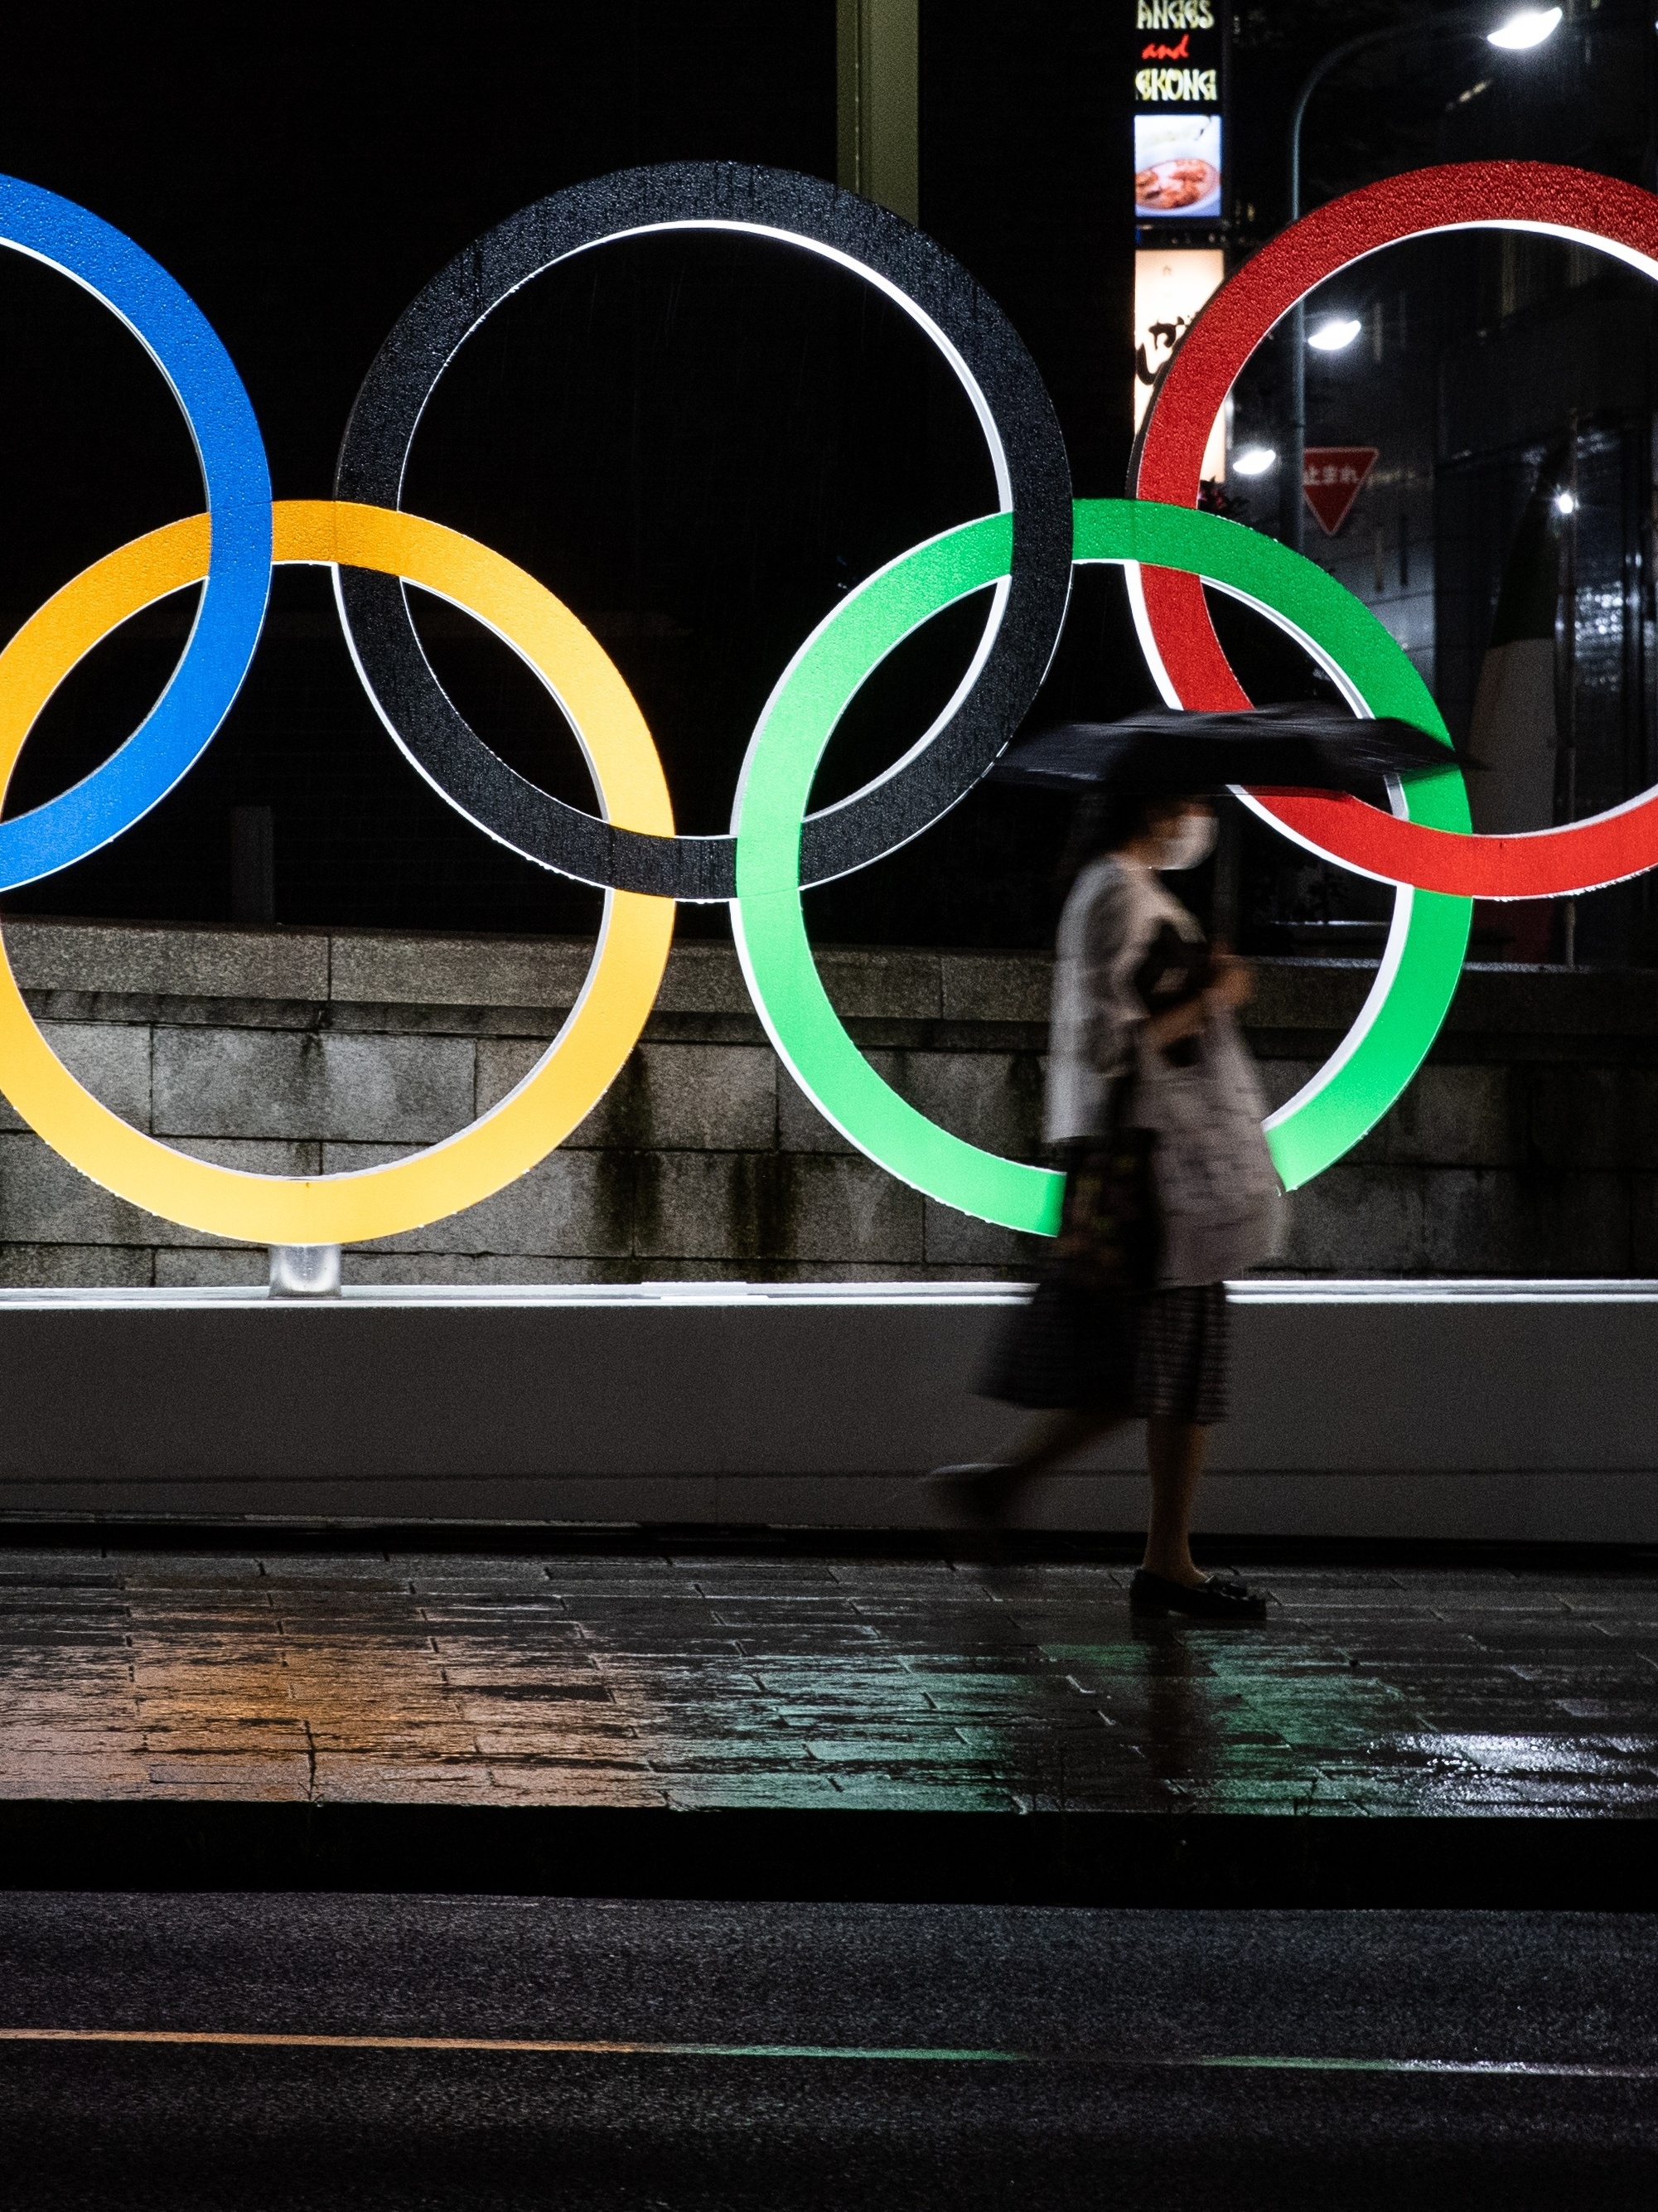 Jogos Olímpicos de Tóquio se mantêm, apesar da situação de emergência